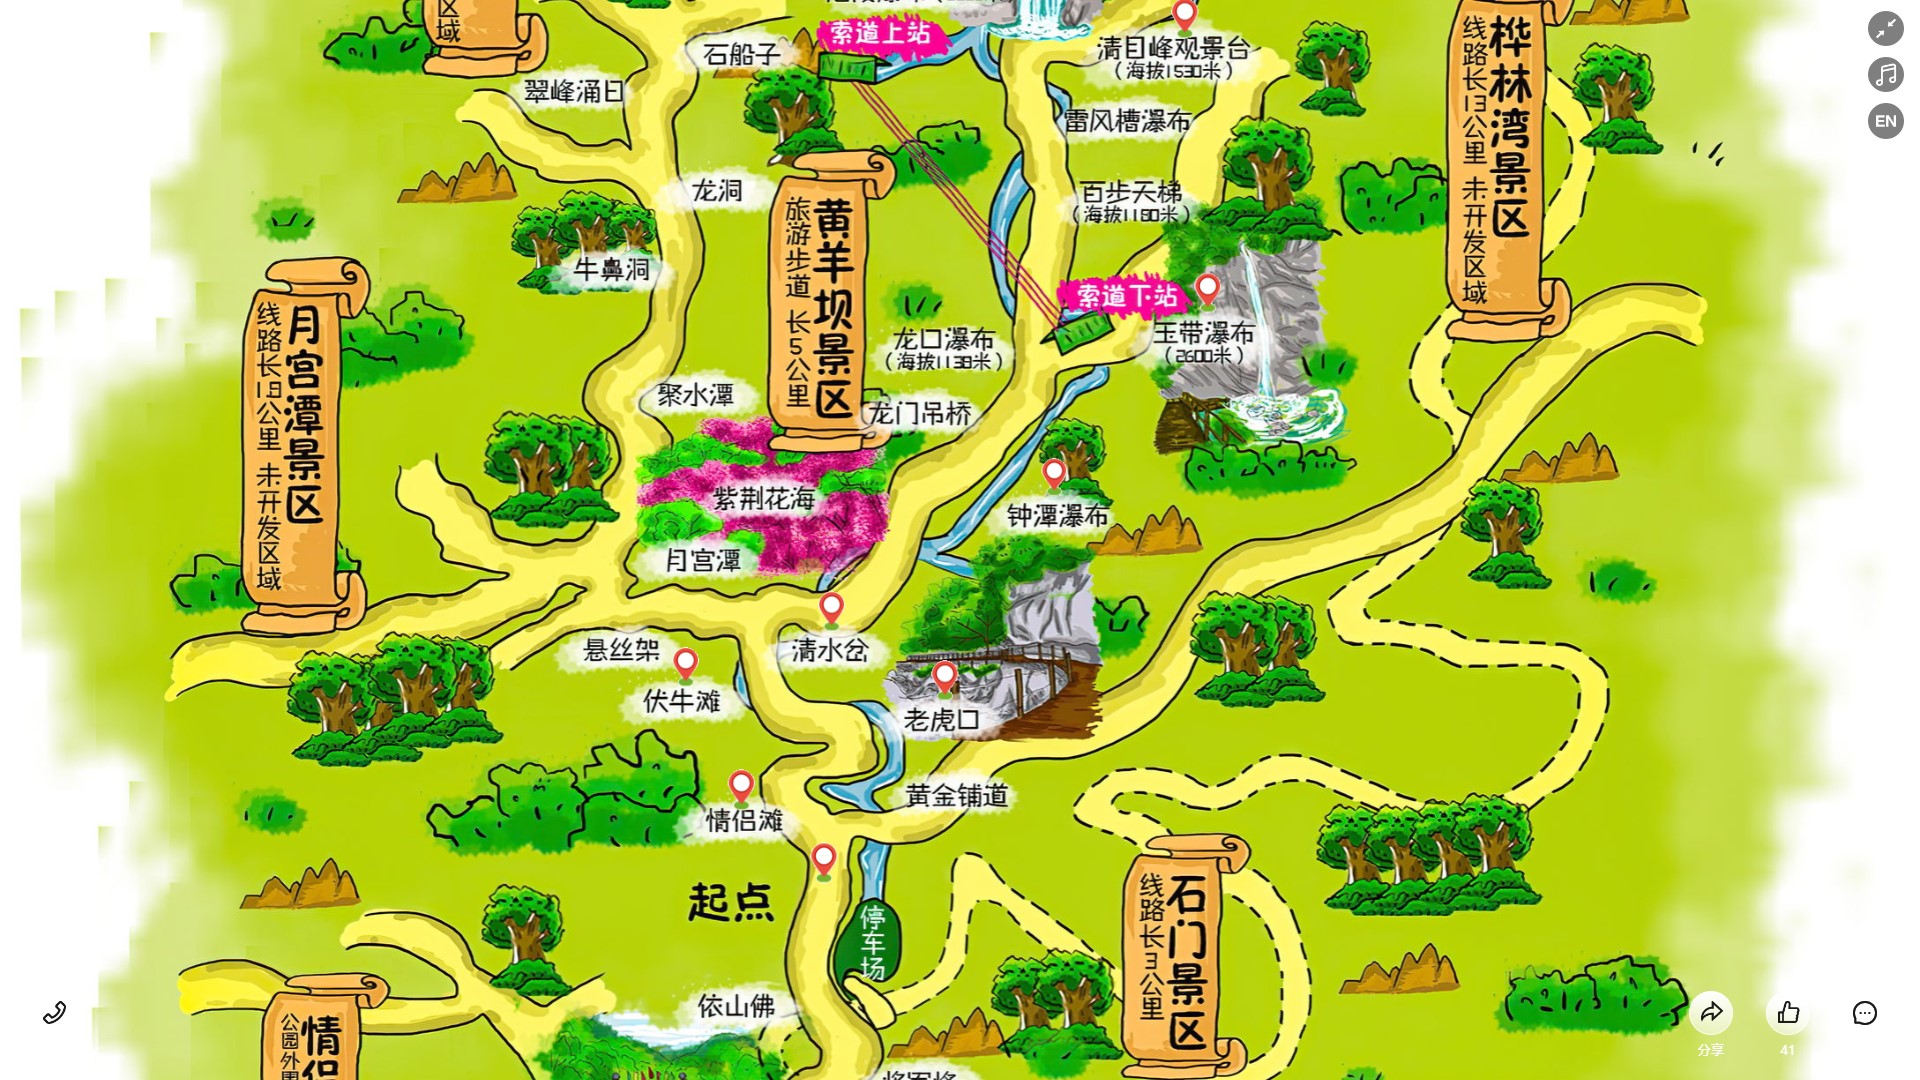 长坡镇景区导览系统